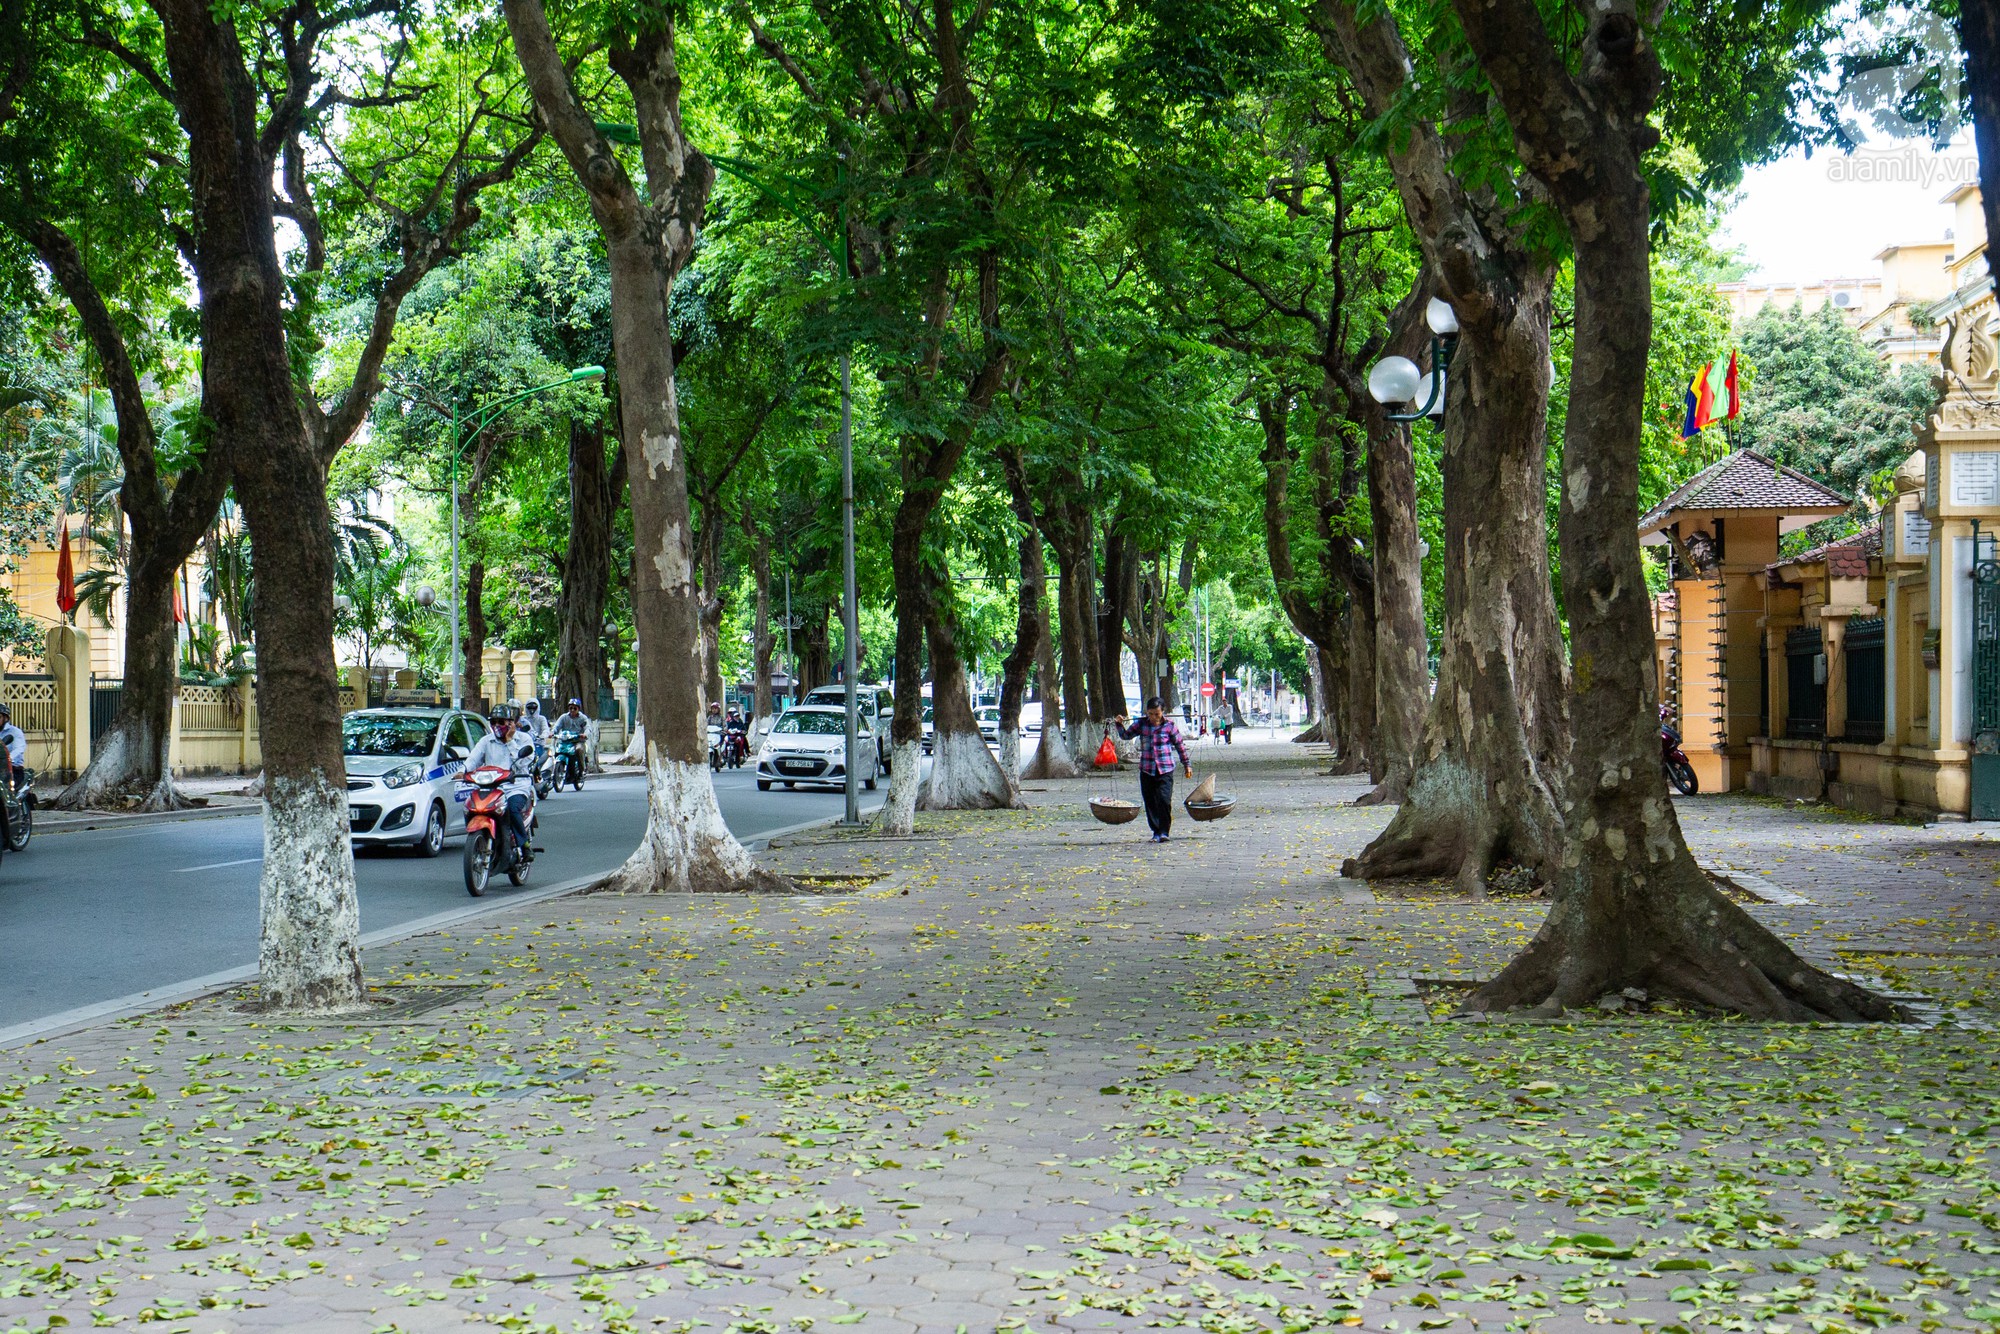 Hãy ngắm nhìn bức ảnh về cây xanh cổ thụ, mang lại sự mát mẻ giữa đô thị ồn ào. Sắc xanh của lá cây vô cùng bừng sáng trên nền xám trầm của thành phố. Đây chắc chắn là một hình ảnh đẹp và ý nghĩa mà bạn không thể bỏ lỡ.